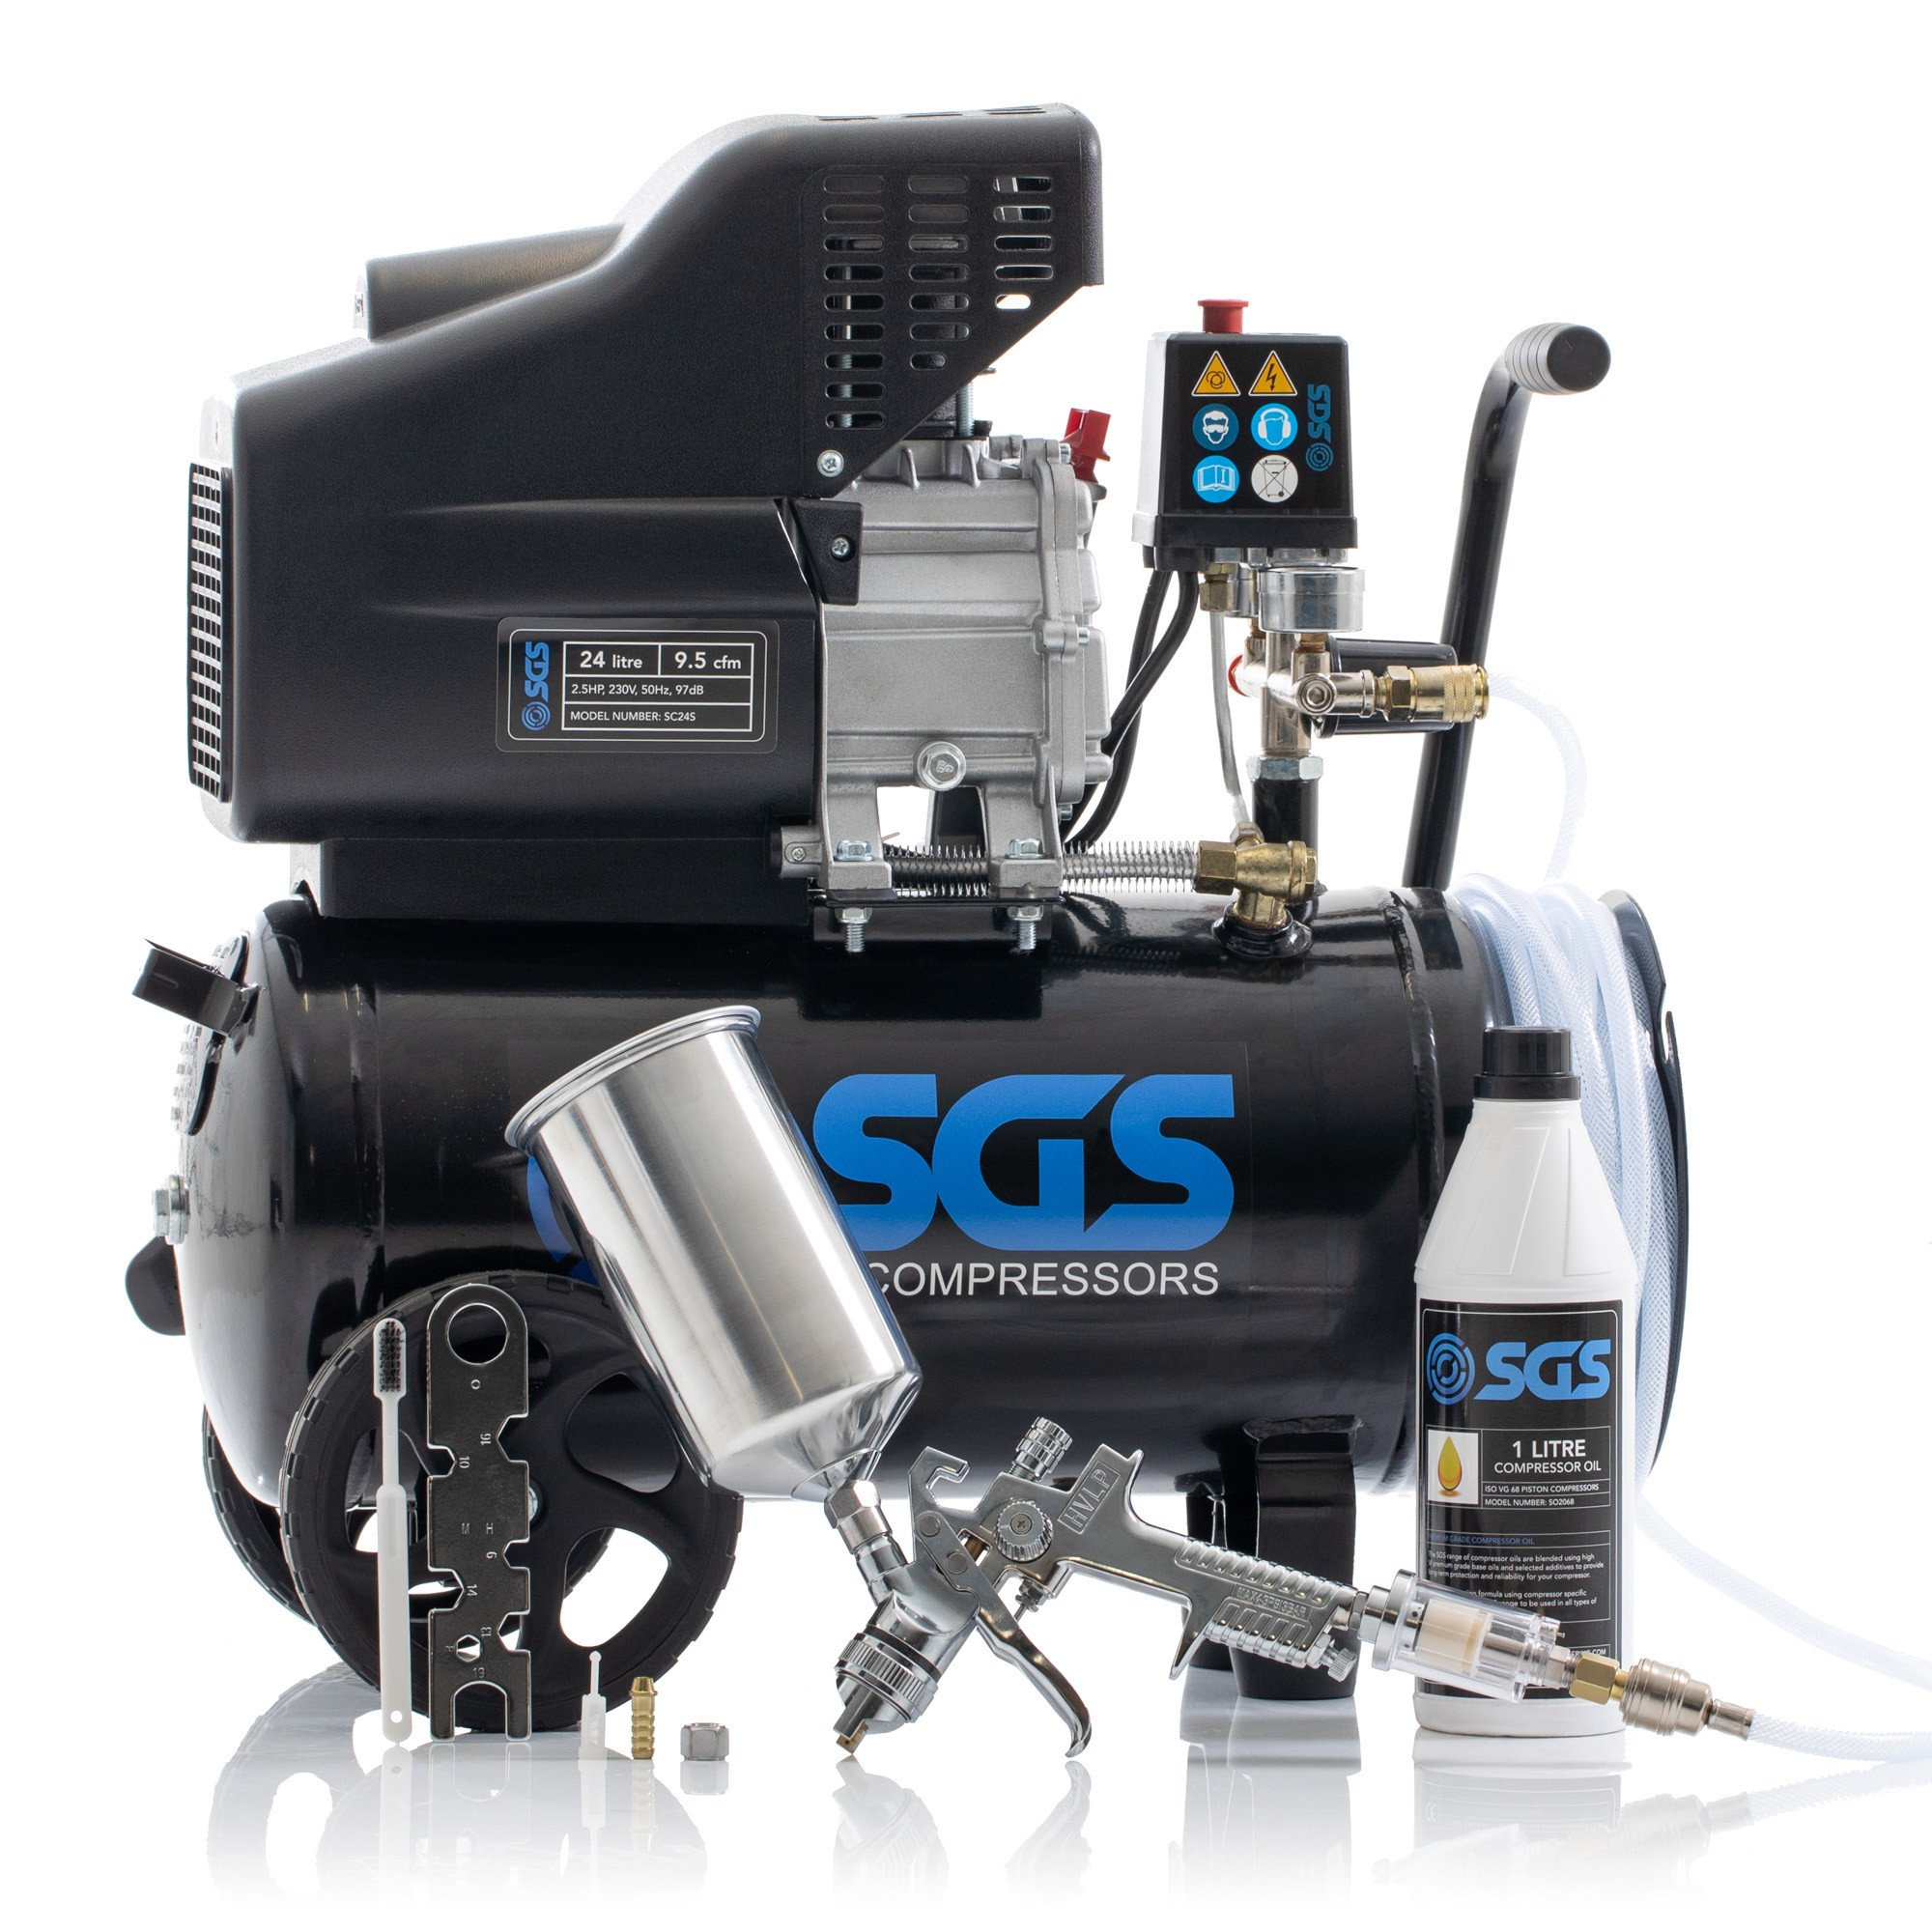 SGS 24升直接驱动空气压缩机，集成软管卷筒和喷枪套件- 9.5CFM 2.5HP 24L